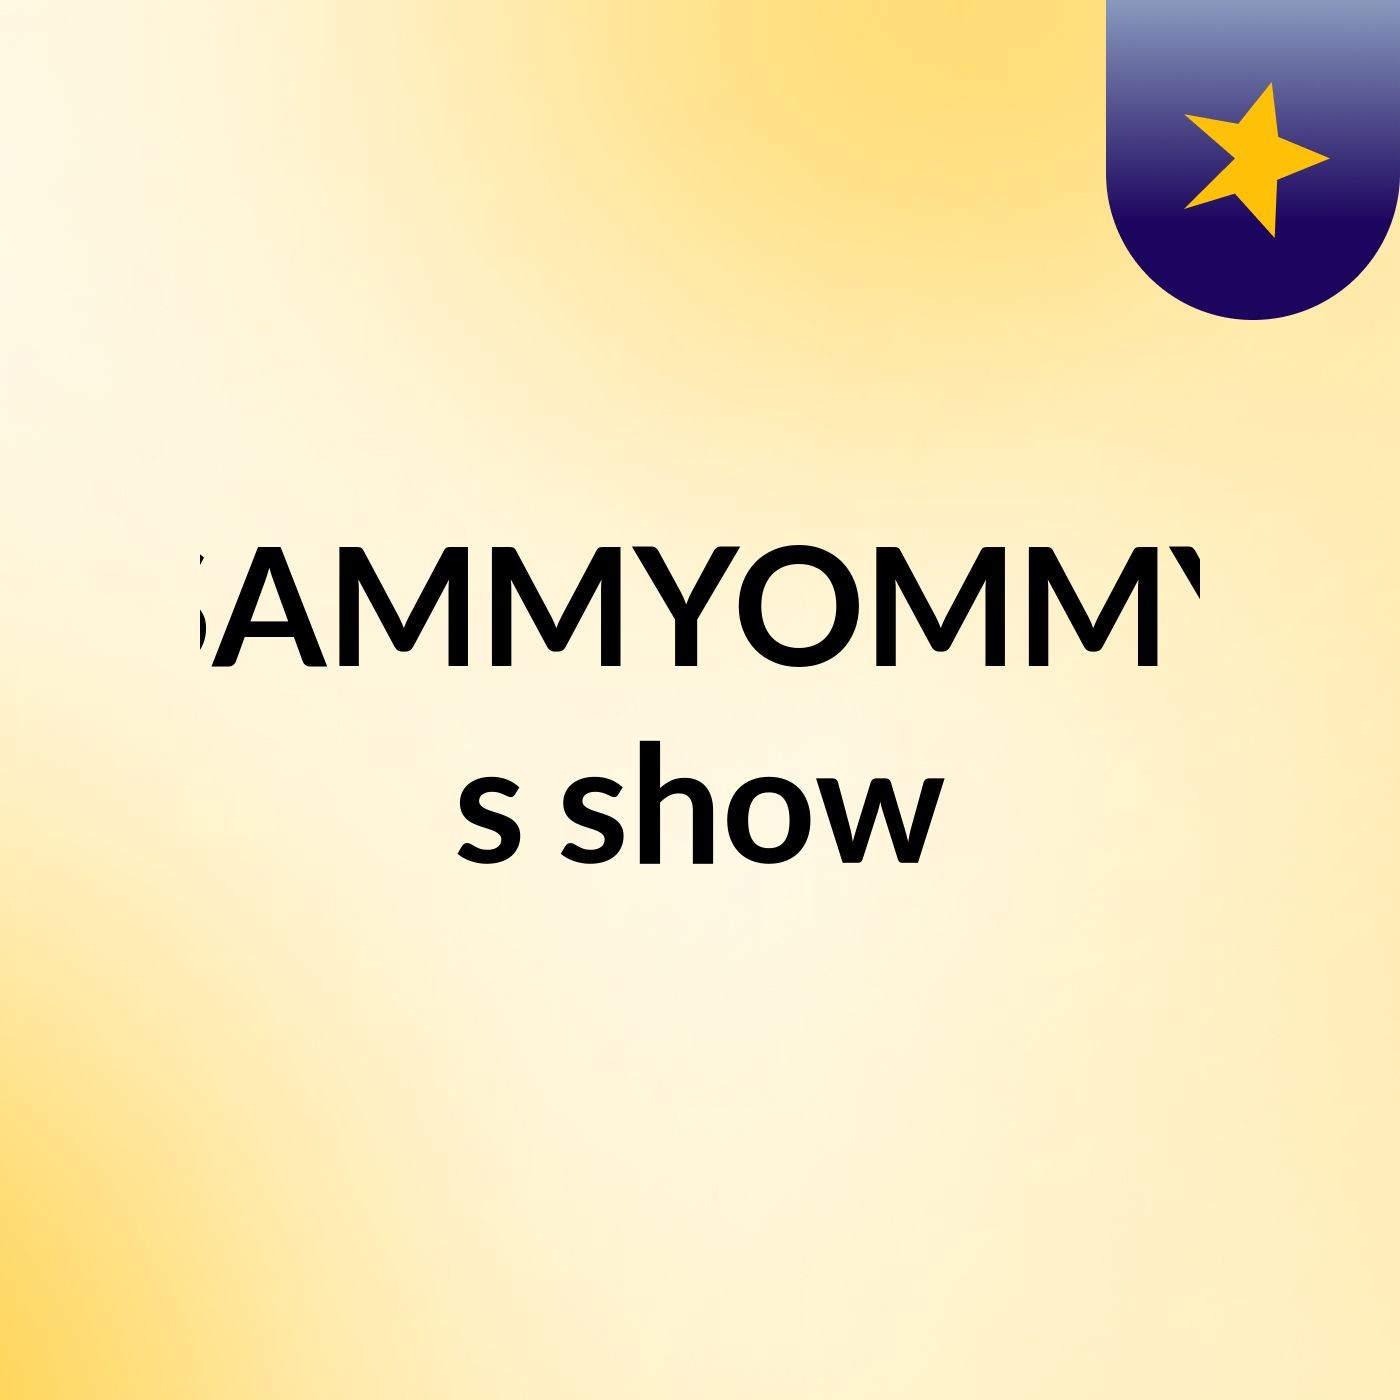 SAMMYOMMY's show